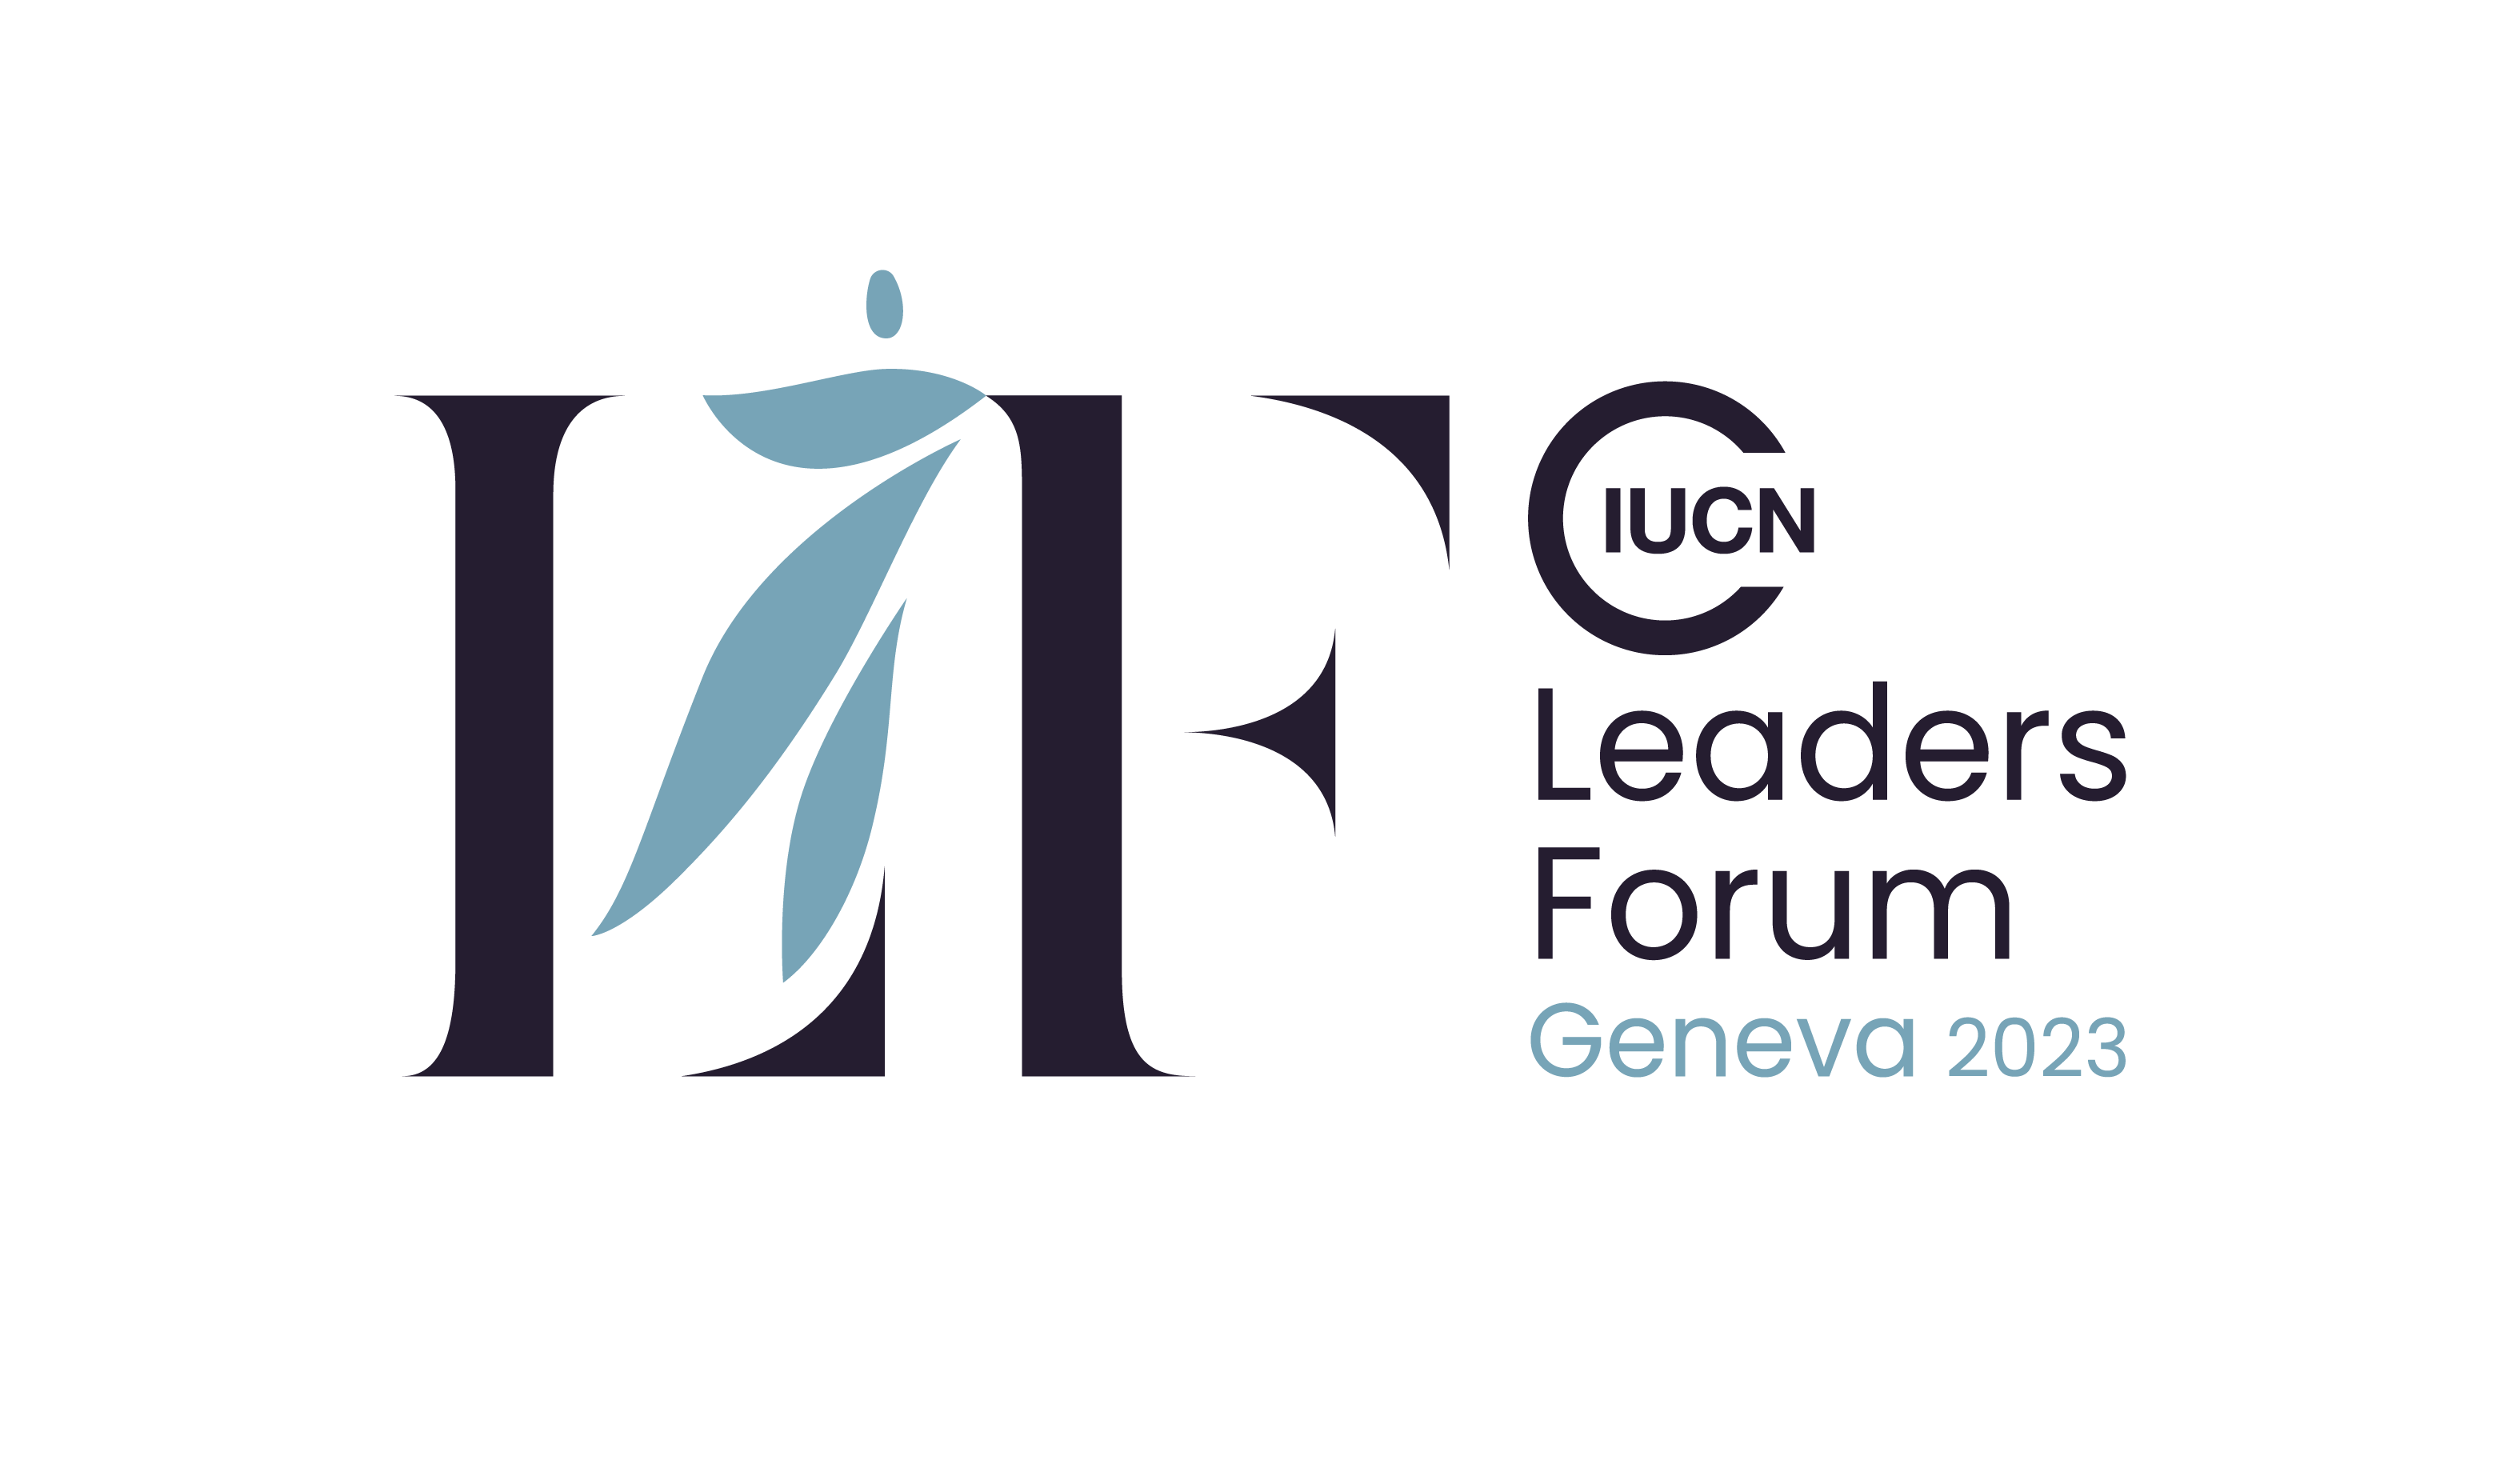 IUCN Leaders Forum Geneva 2023 logo